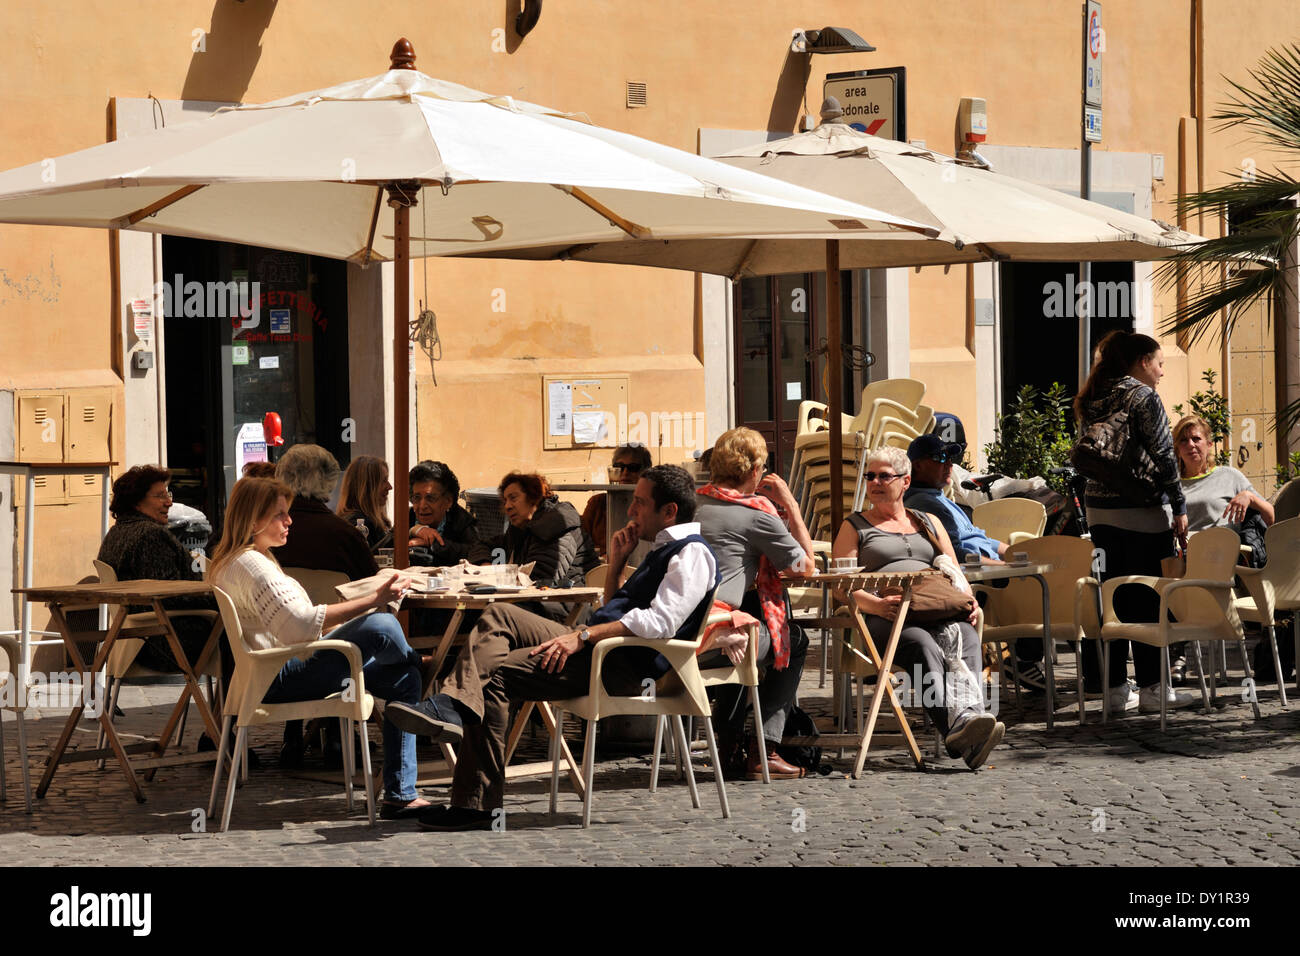 Italy, Rome, Jewish Ghetto, Via del Portico d'Ottavia, outdoor cafe Stock Photo